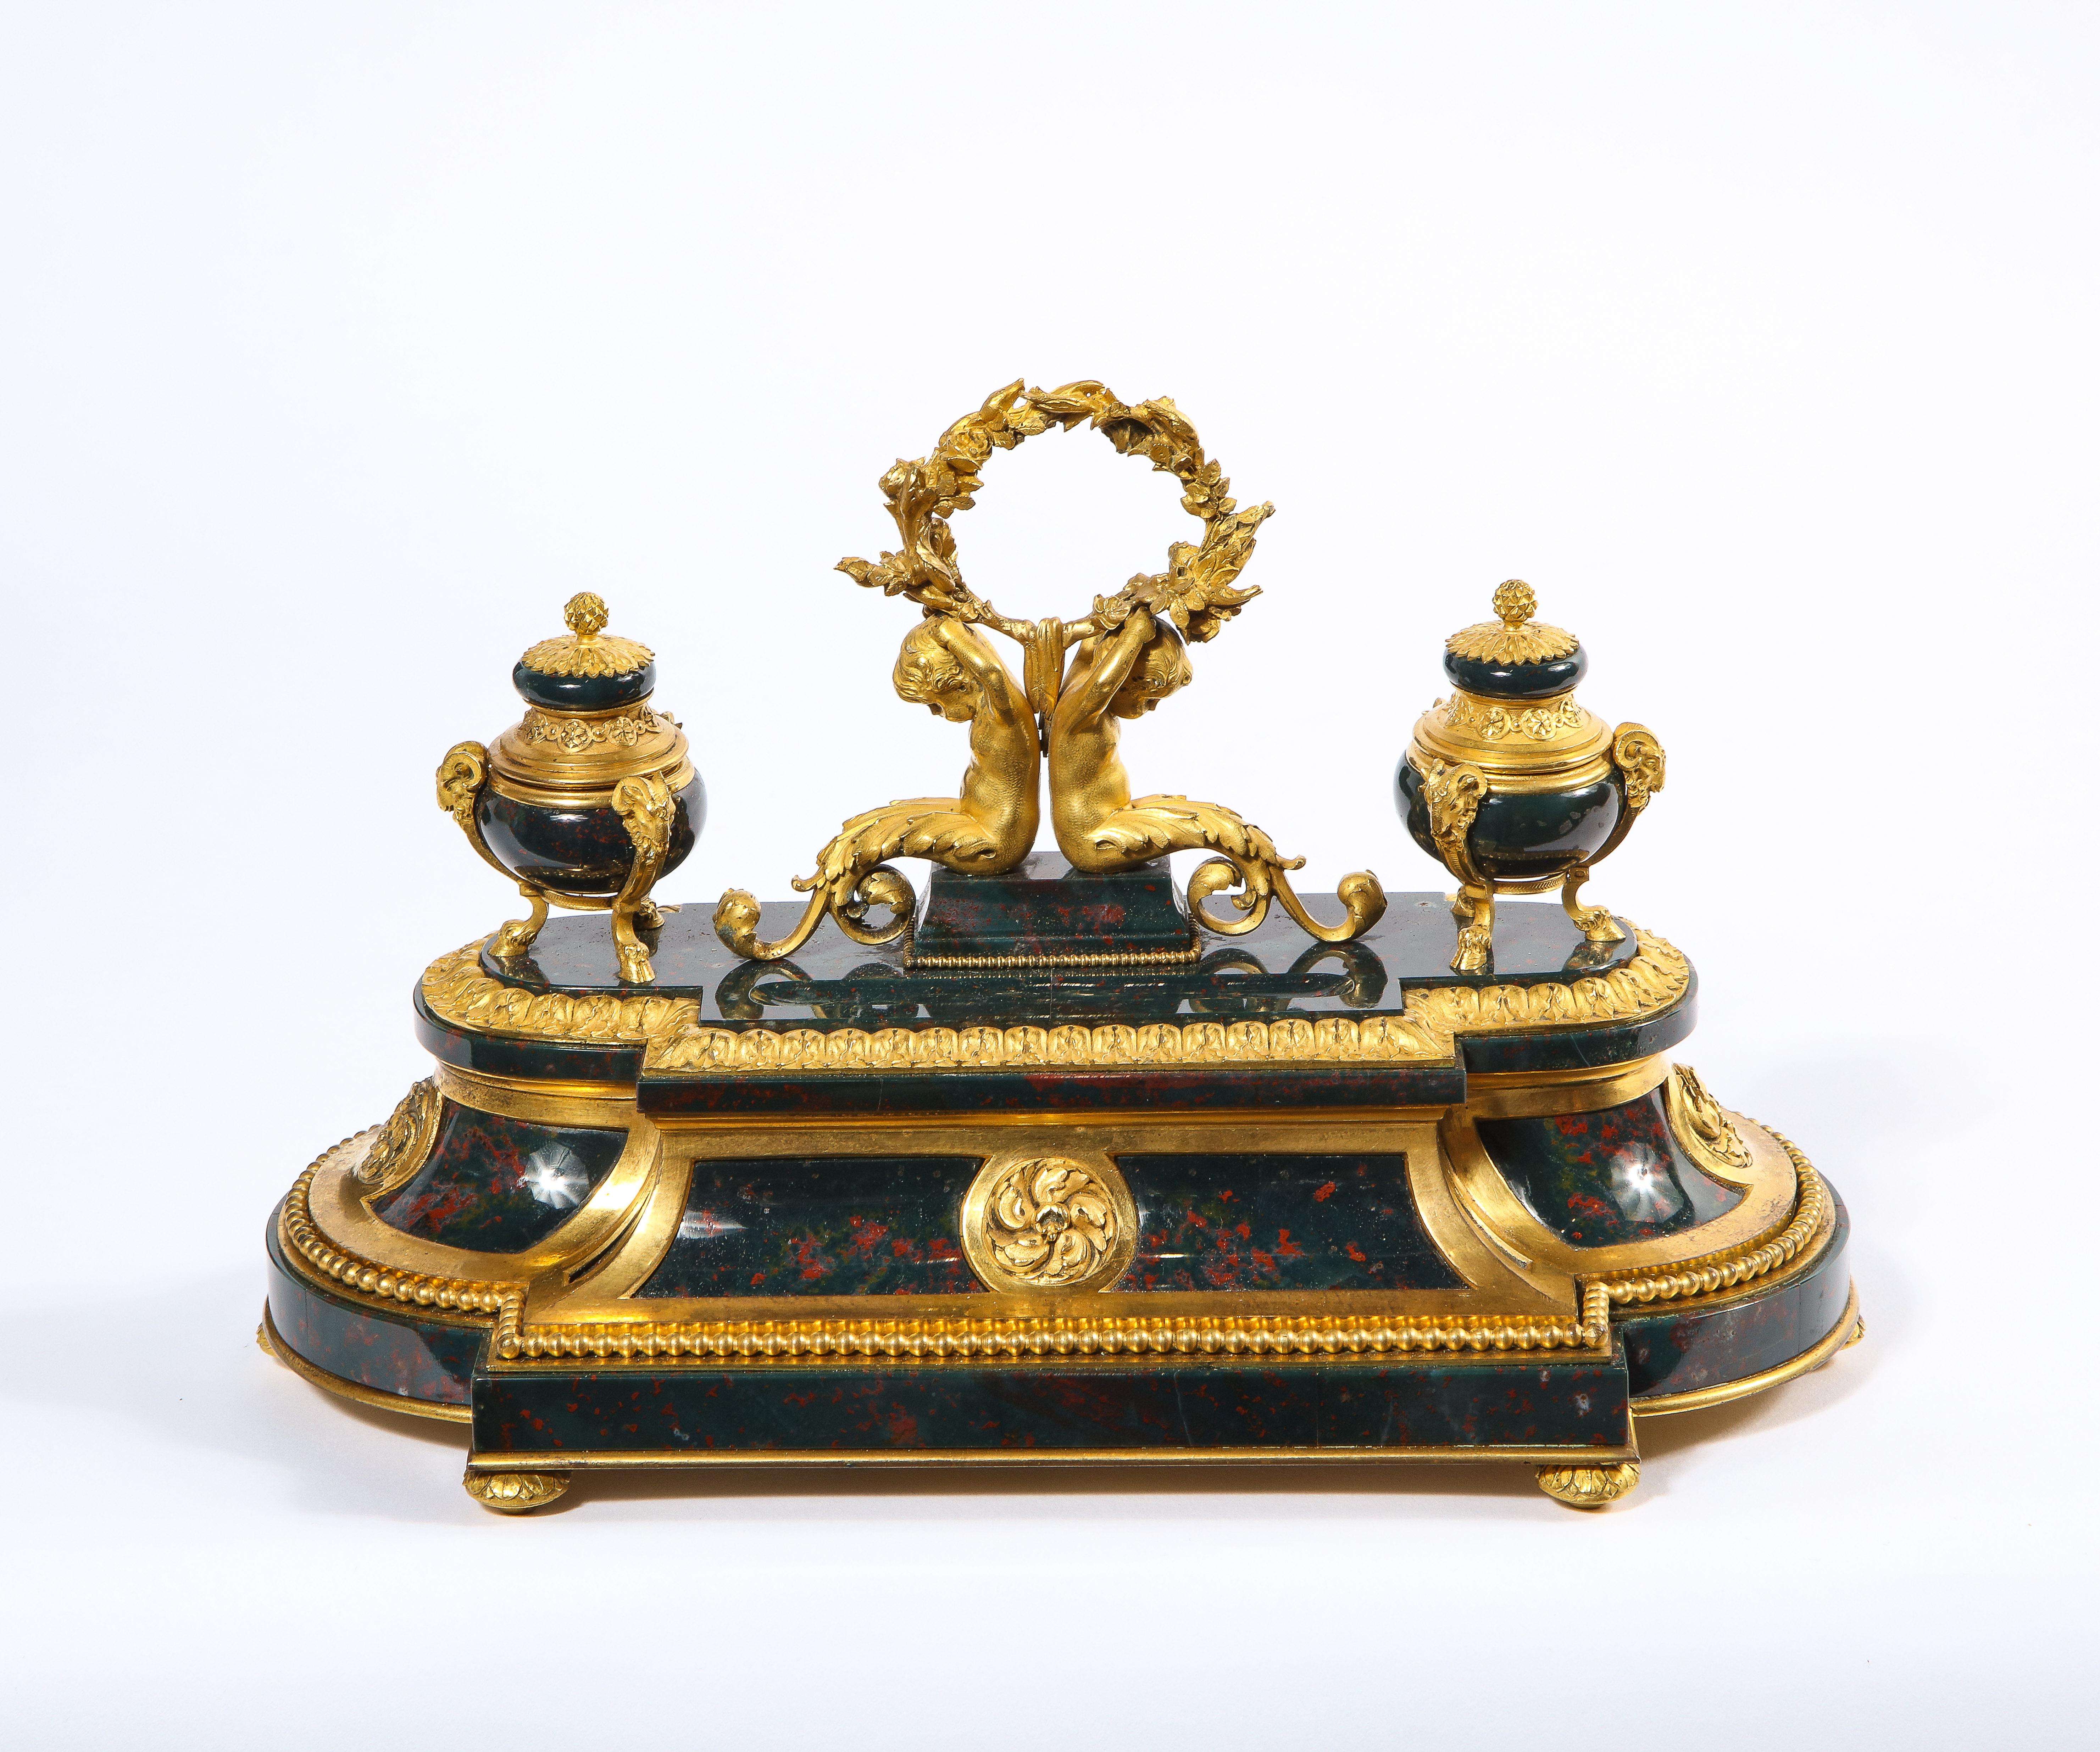 Exquis et rare encrier français de style Louis XVI en pierre sanguine montée en ormolu, vers 1875.

Un encrier en forme d'encrier vraiment exceptionnel et d'une qualité comparable à celle d'un bijou, réalisé en bronze doré de la plus haute qualité,